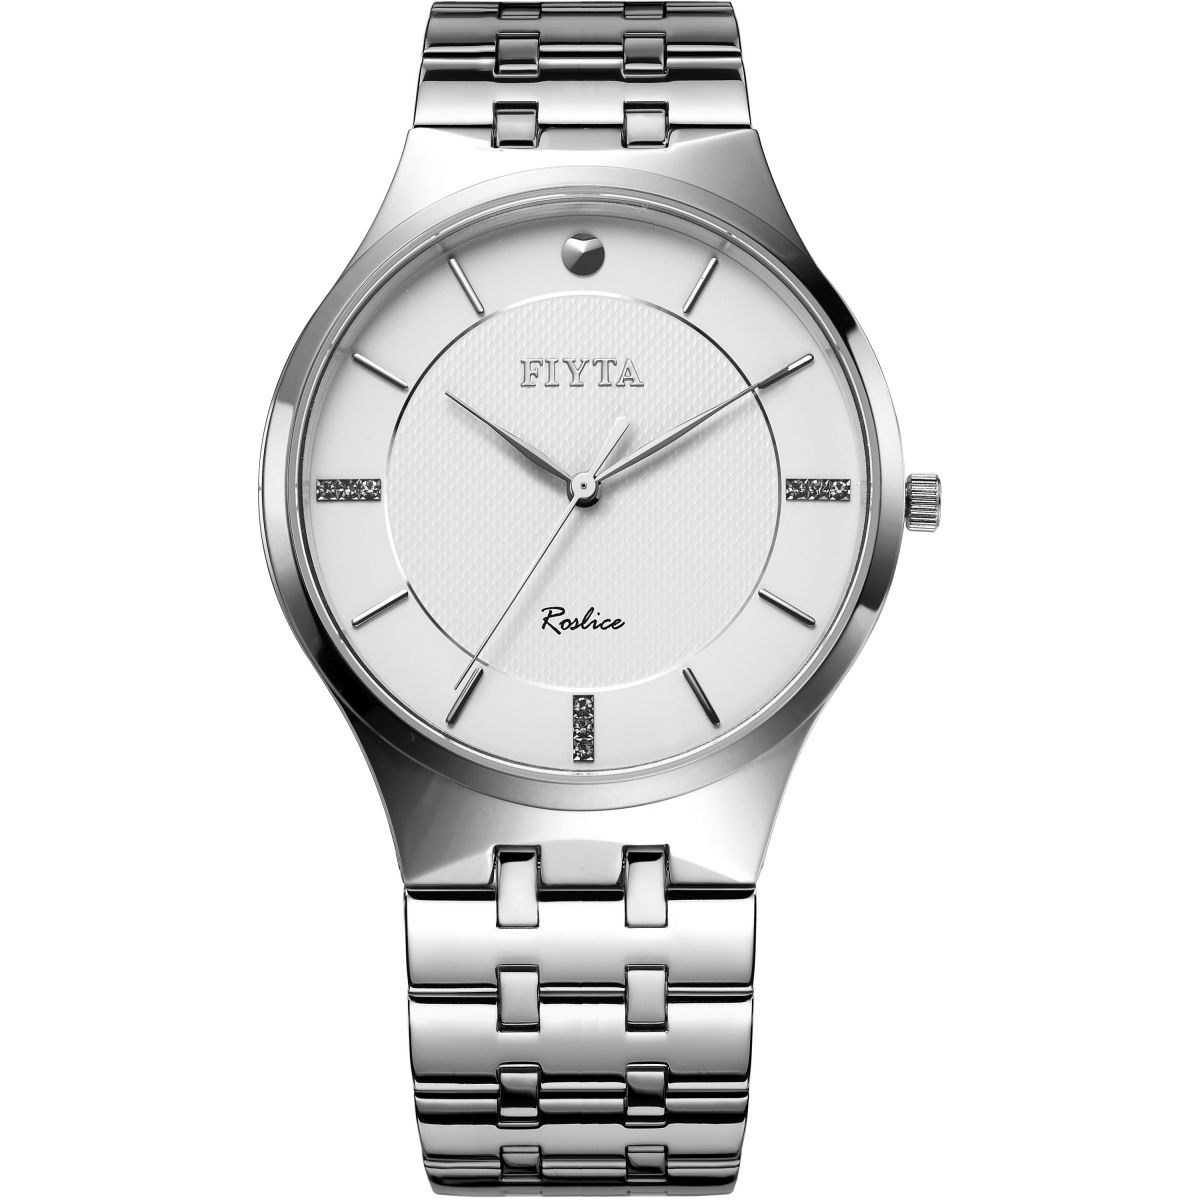 Watch Shop - Watch in White for Men from Fiyta GOOFASH